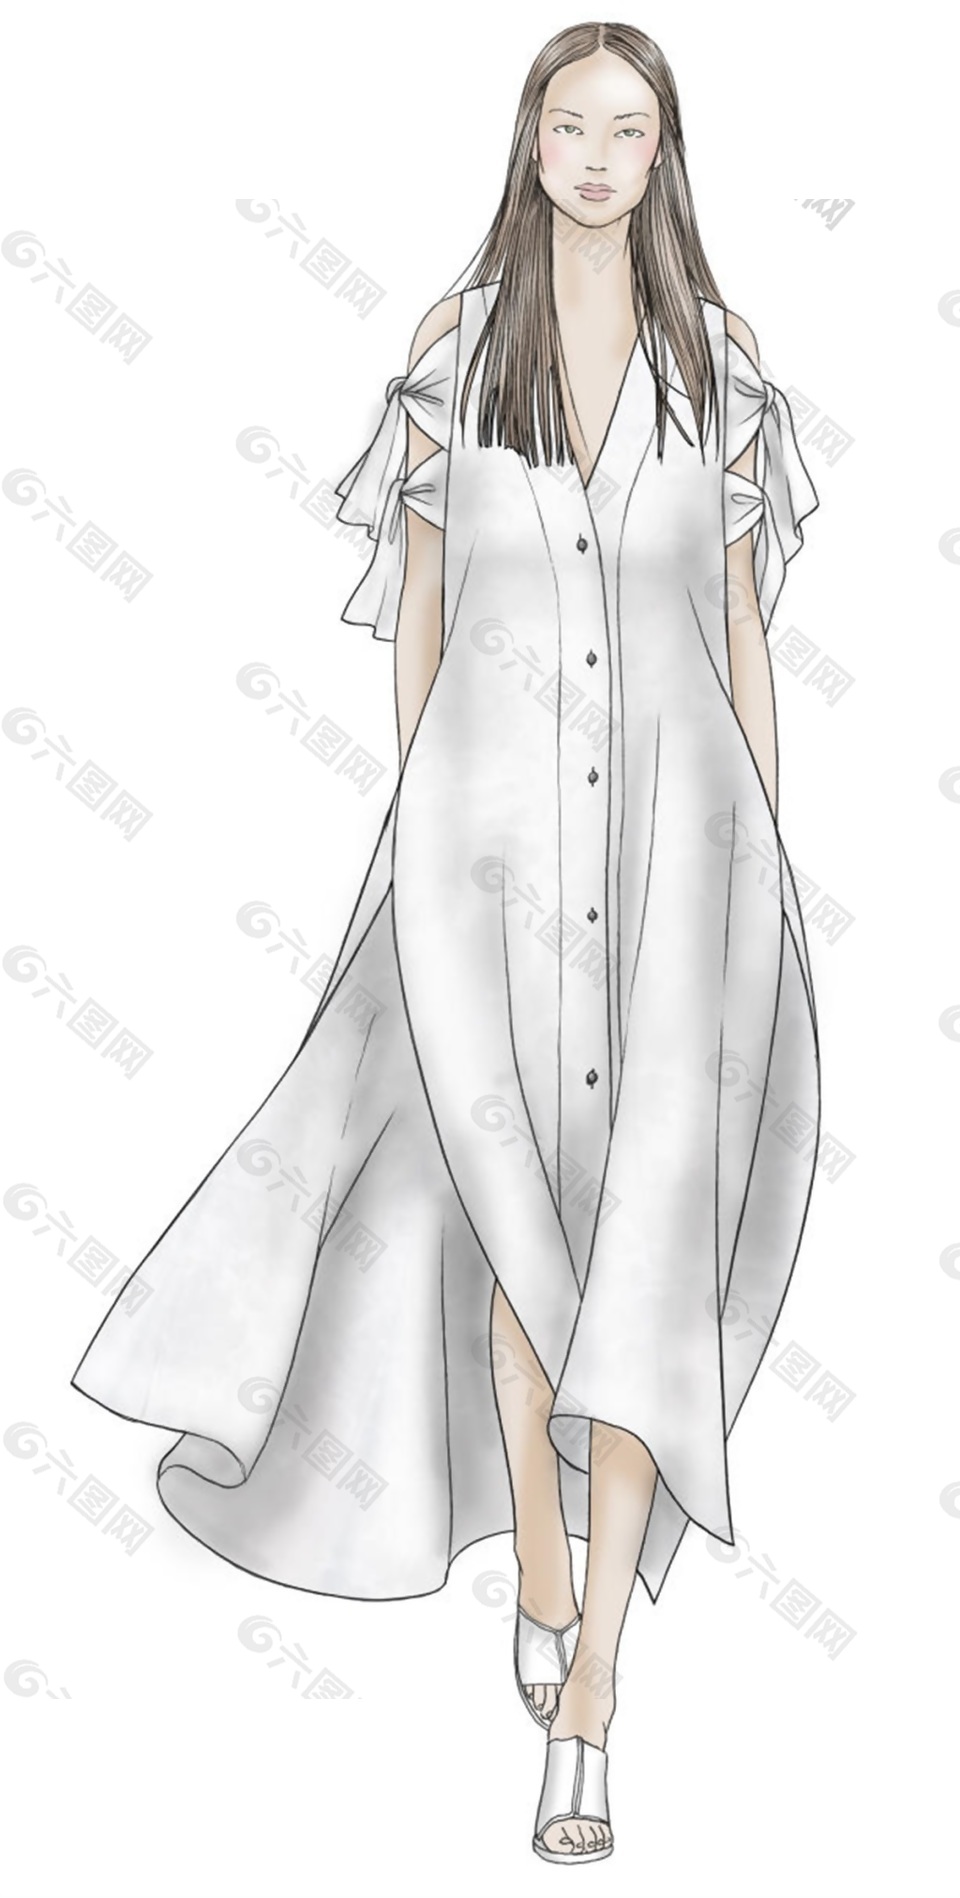 简约白色衬衫长裙女装效果图